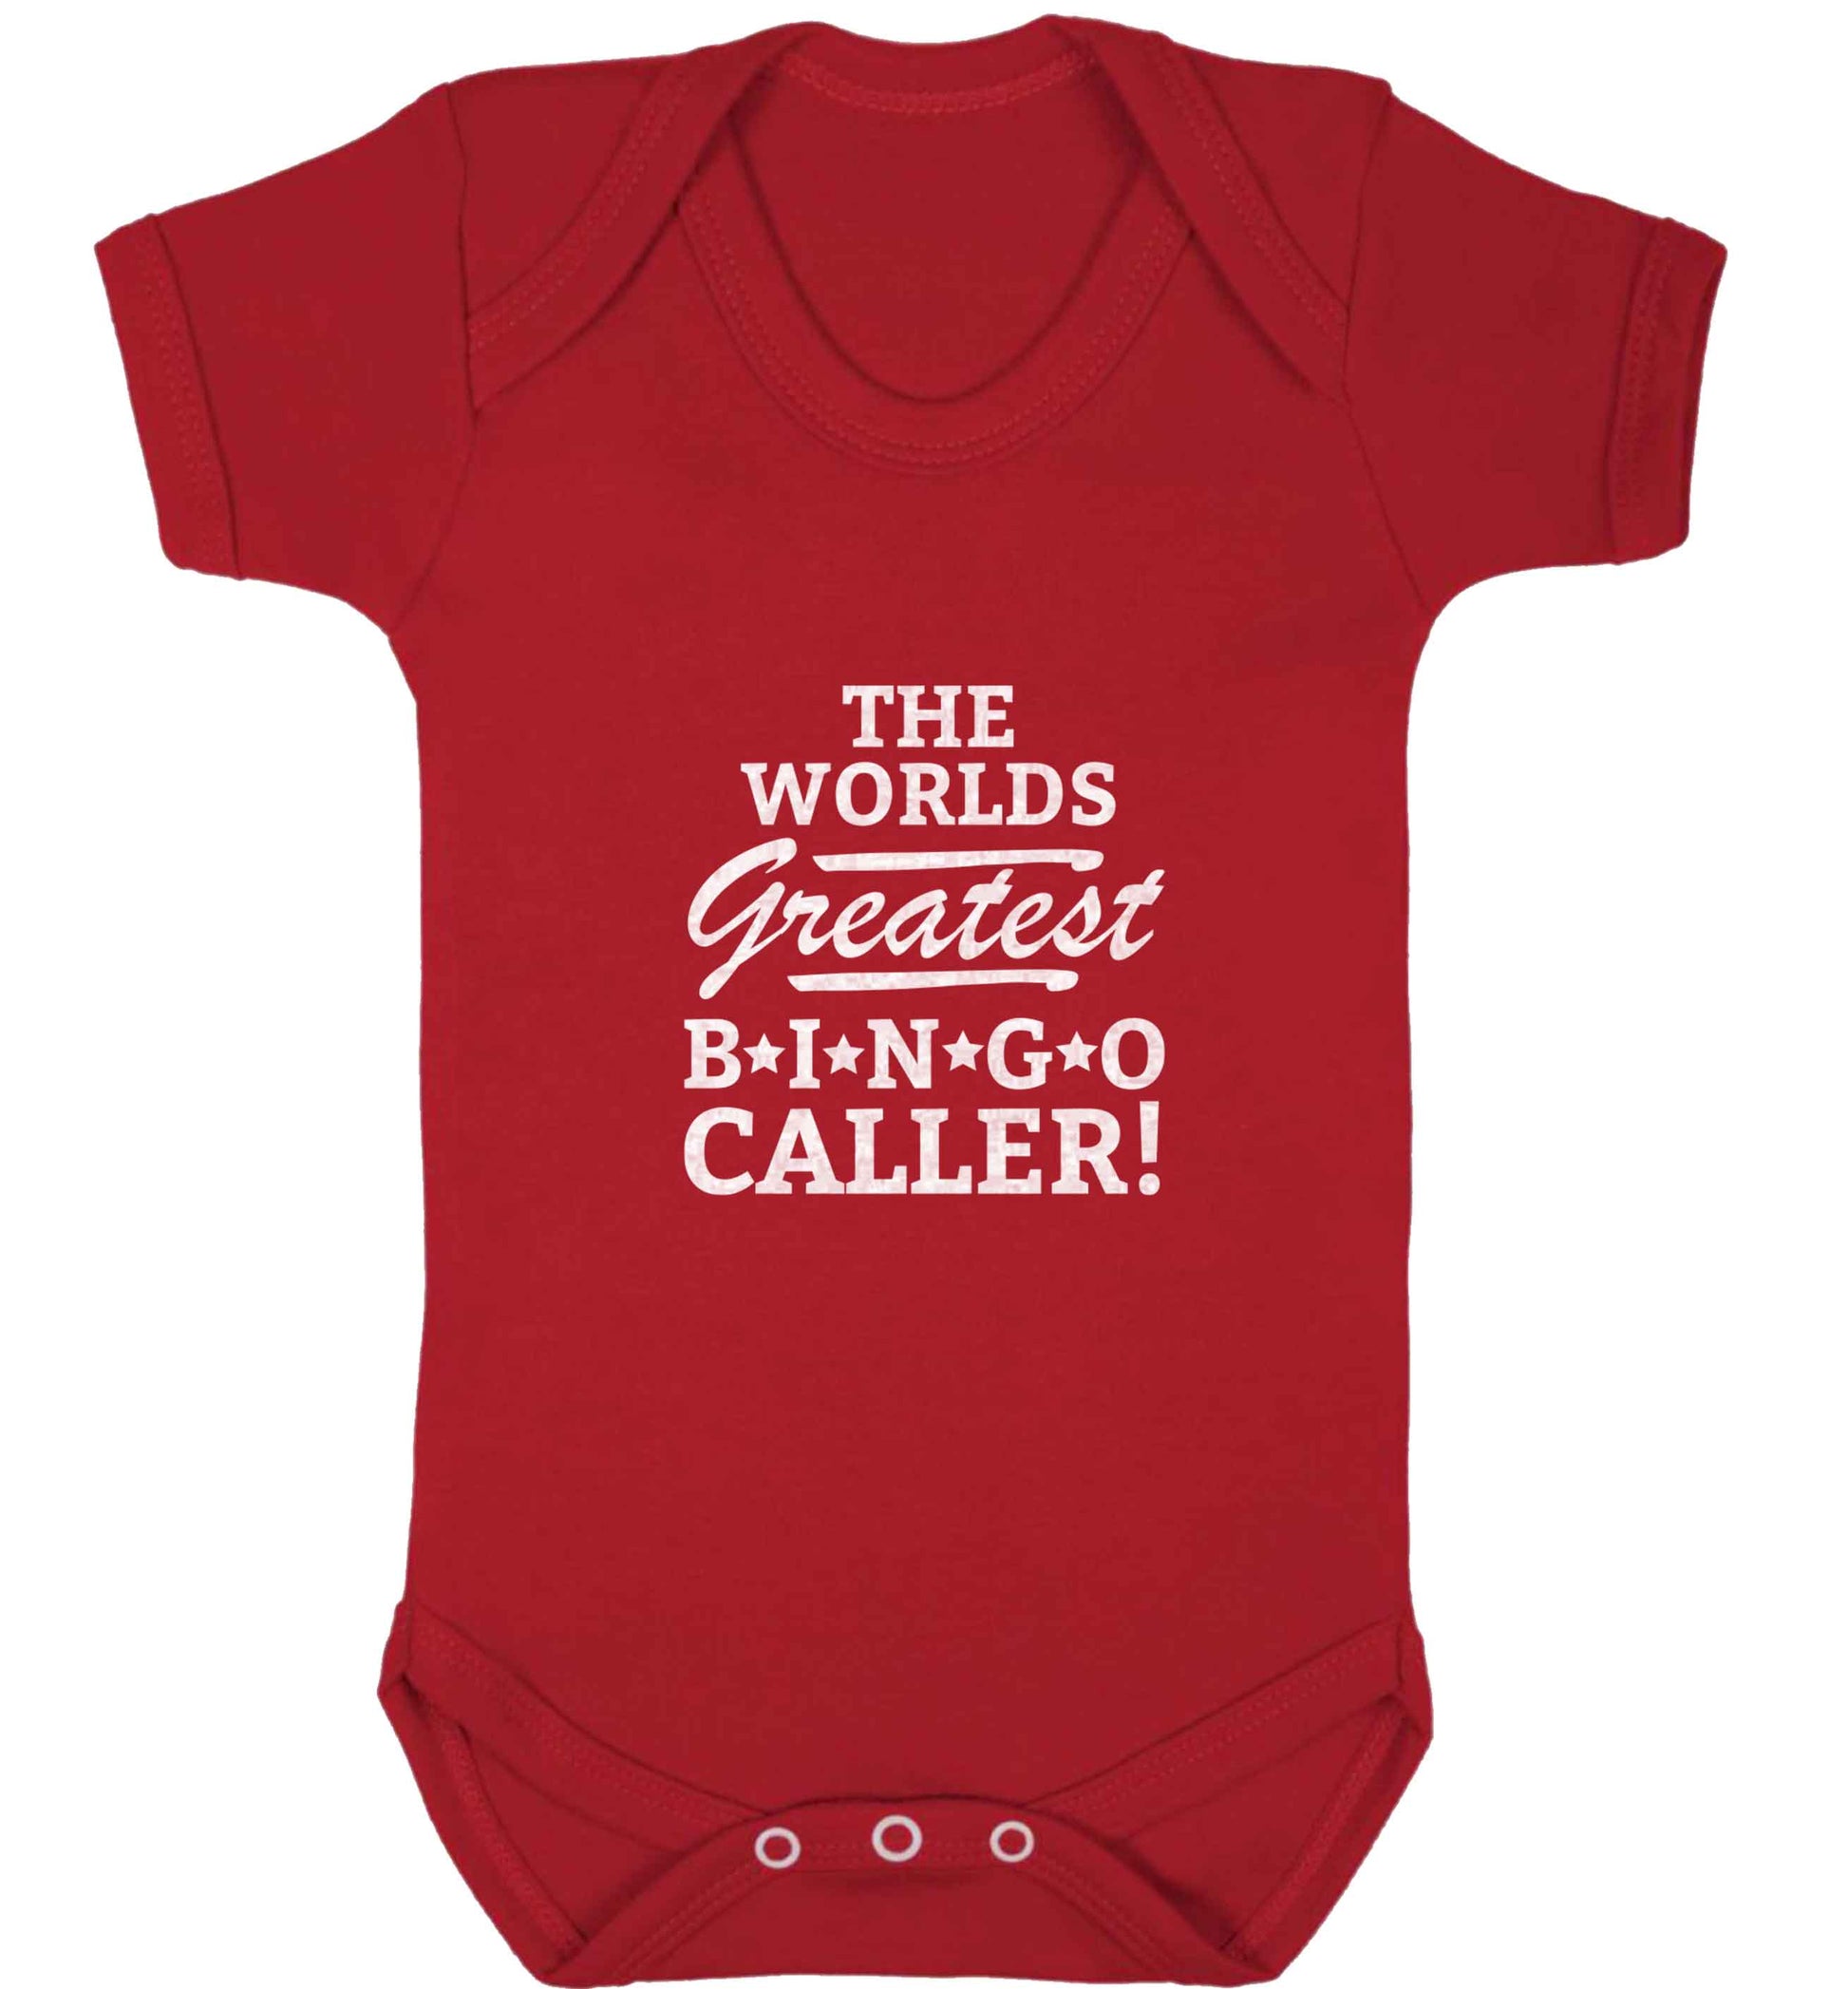 Worlds greatest bingo caller baby vest red 18-24 months